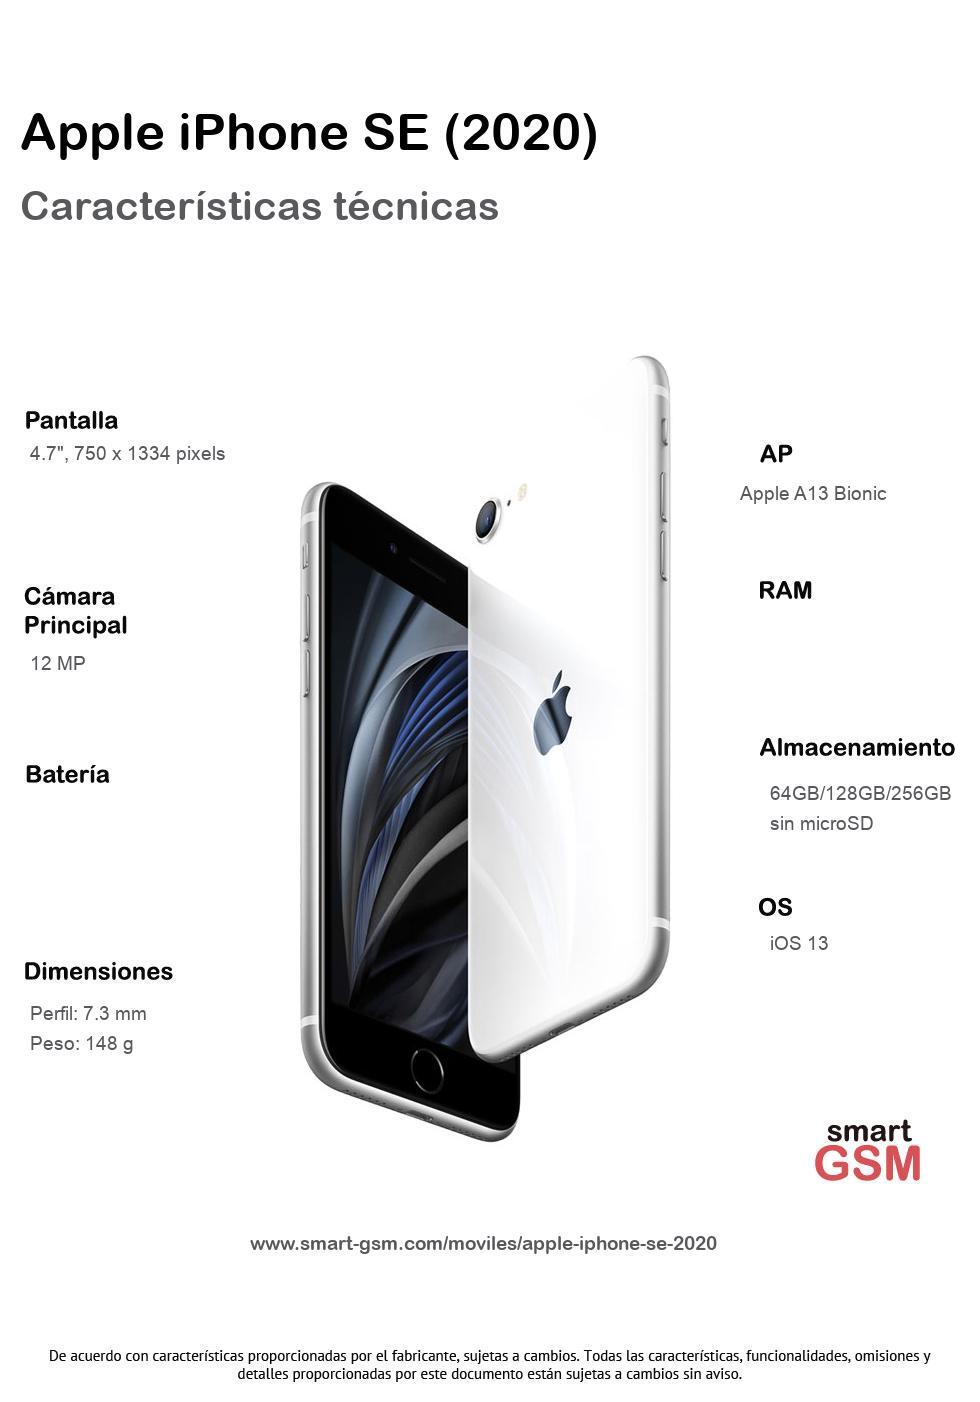 iPhone SE (2020), características, ofertas y mejor precio para